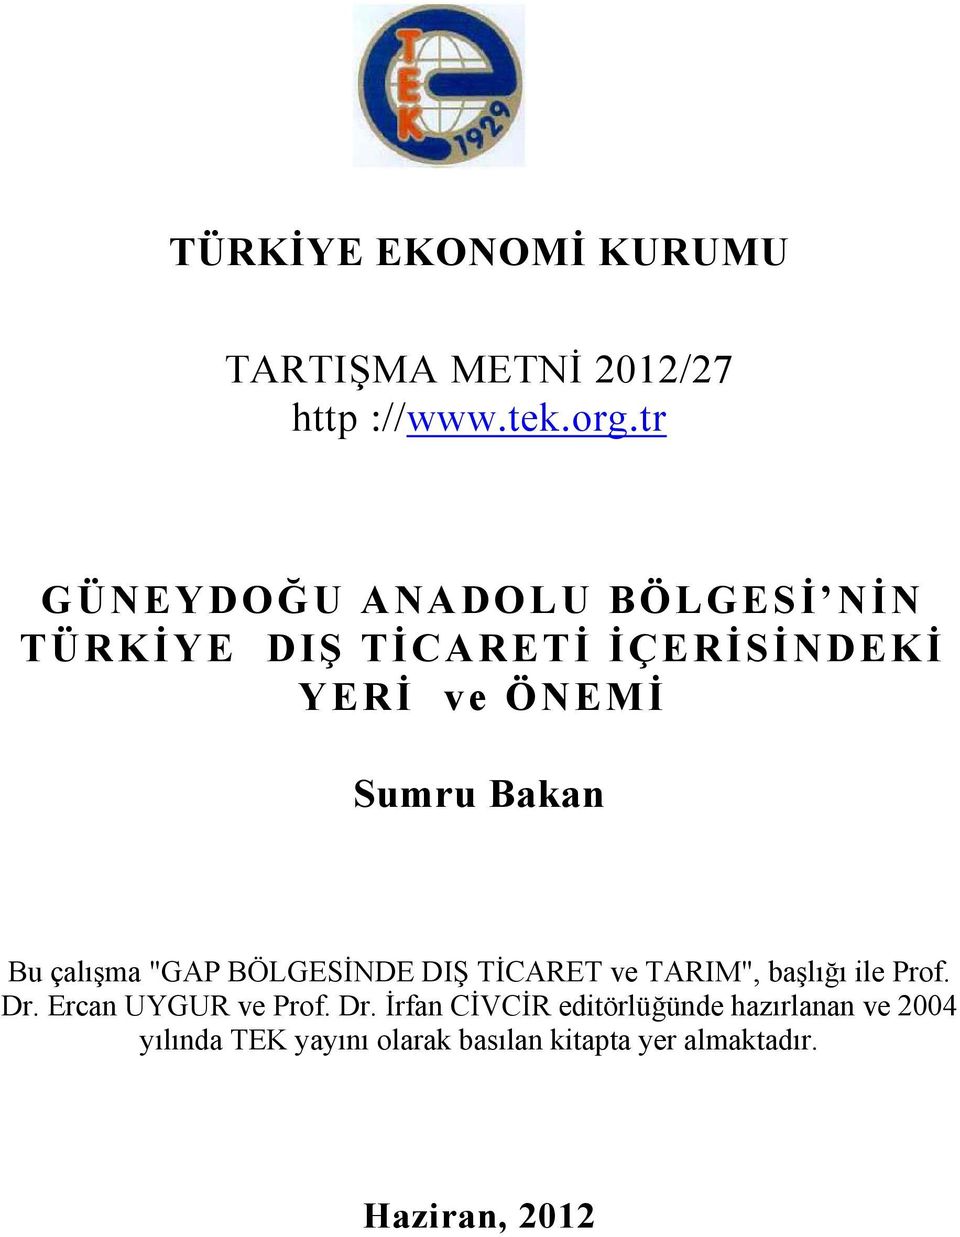 Bu çalışma "GAP BÖLGESİNDE DIŞ TİCARET ve TARIM", başlığı ile Prof. Dr. Ercan UYGUR ve Prof.